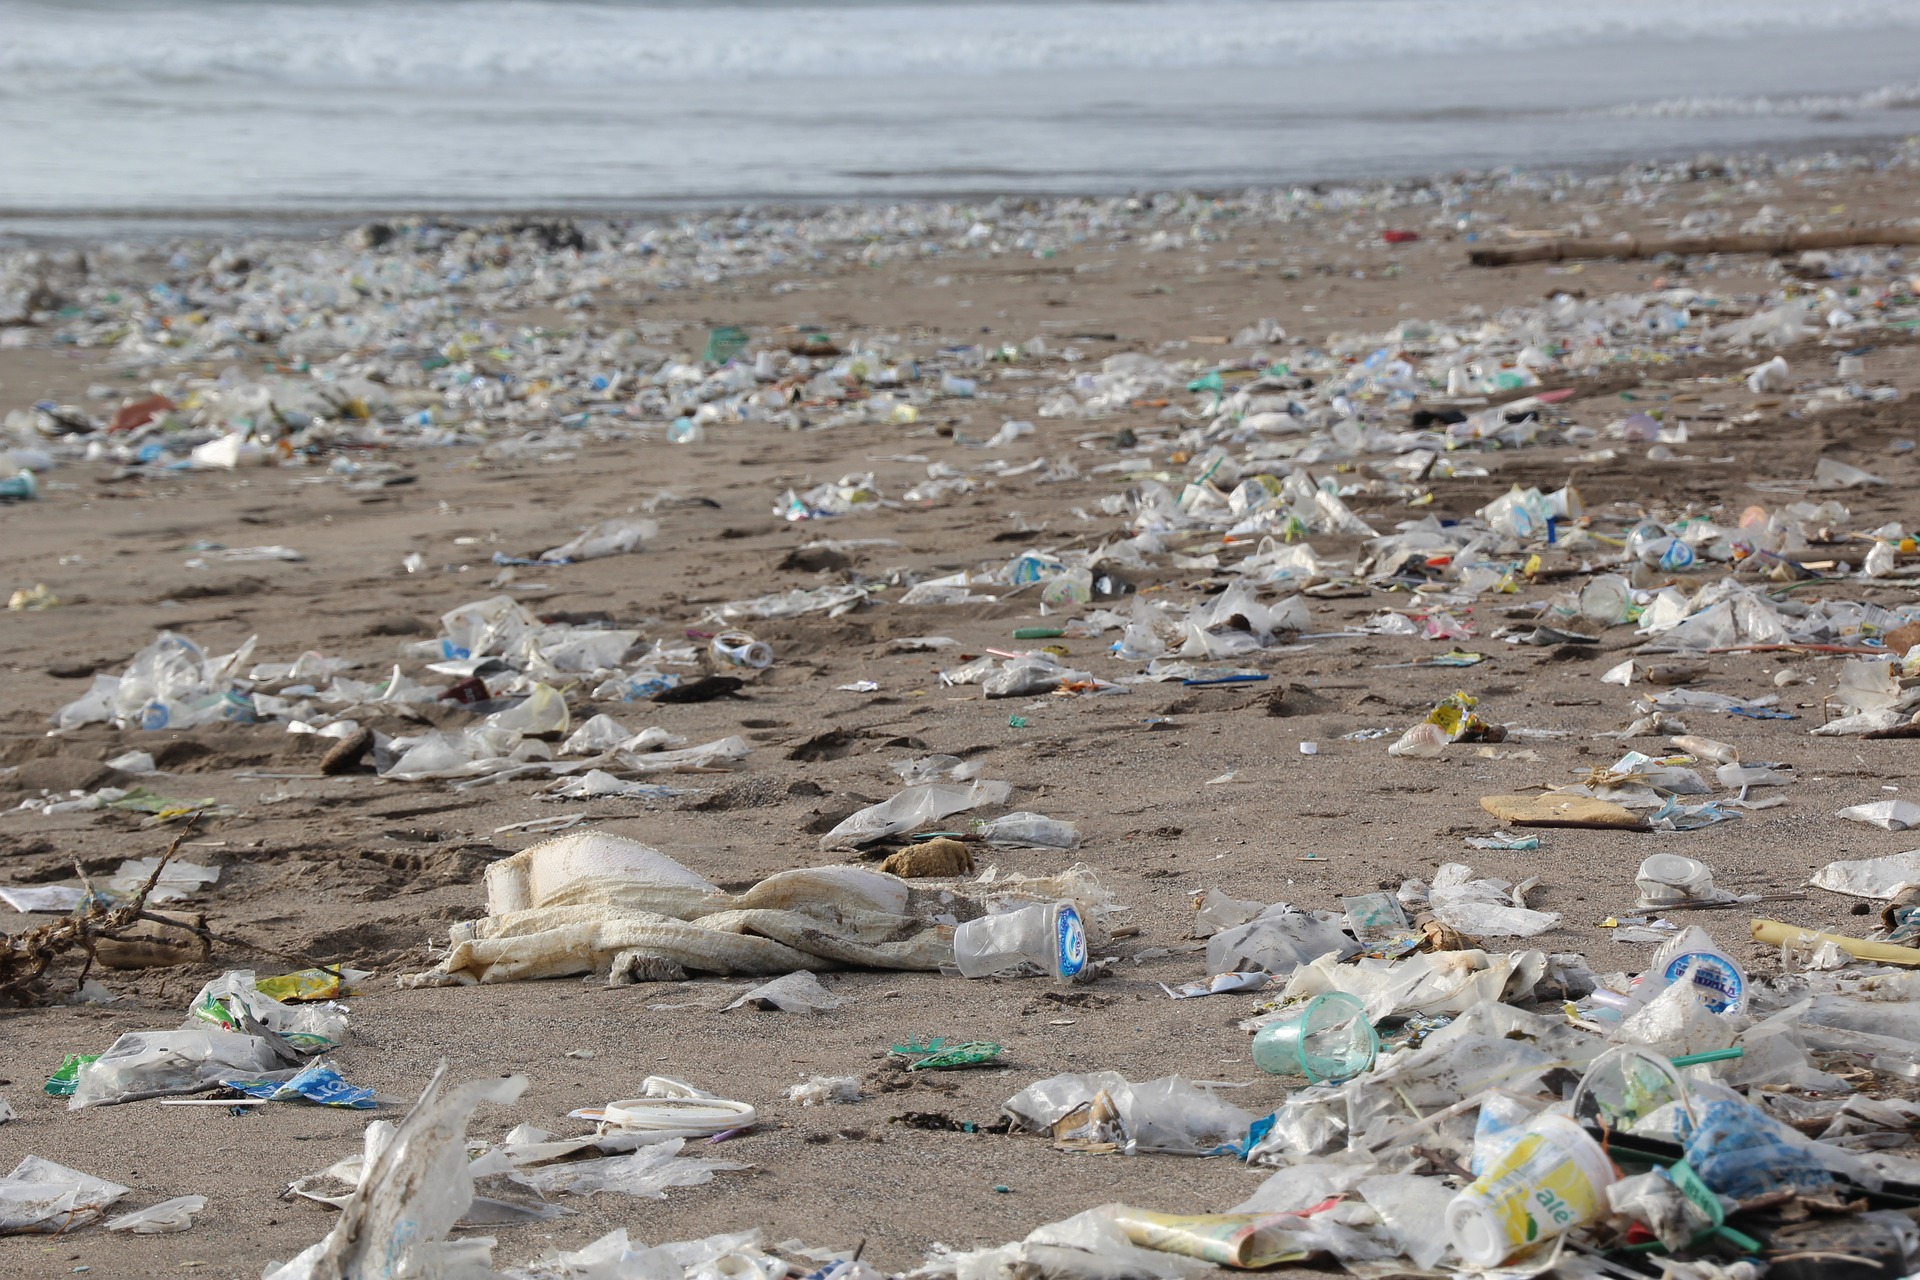 Abb. 6: Plastikmüll am Strand